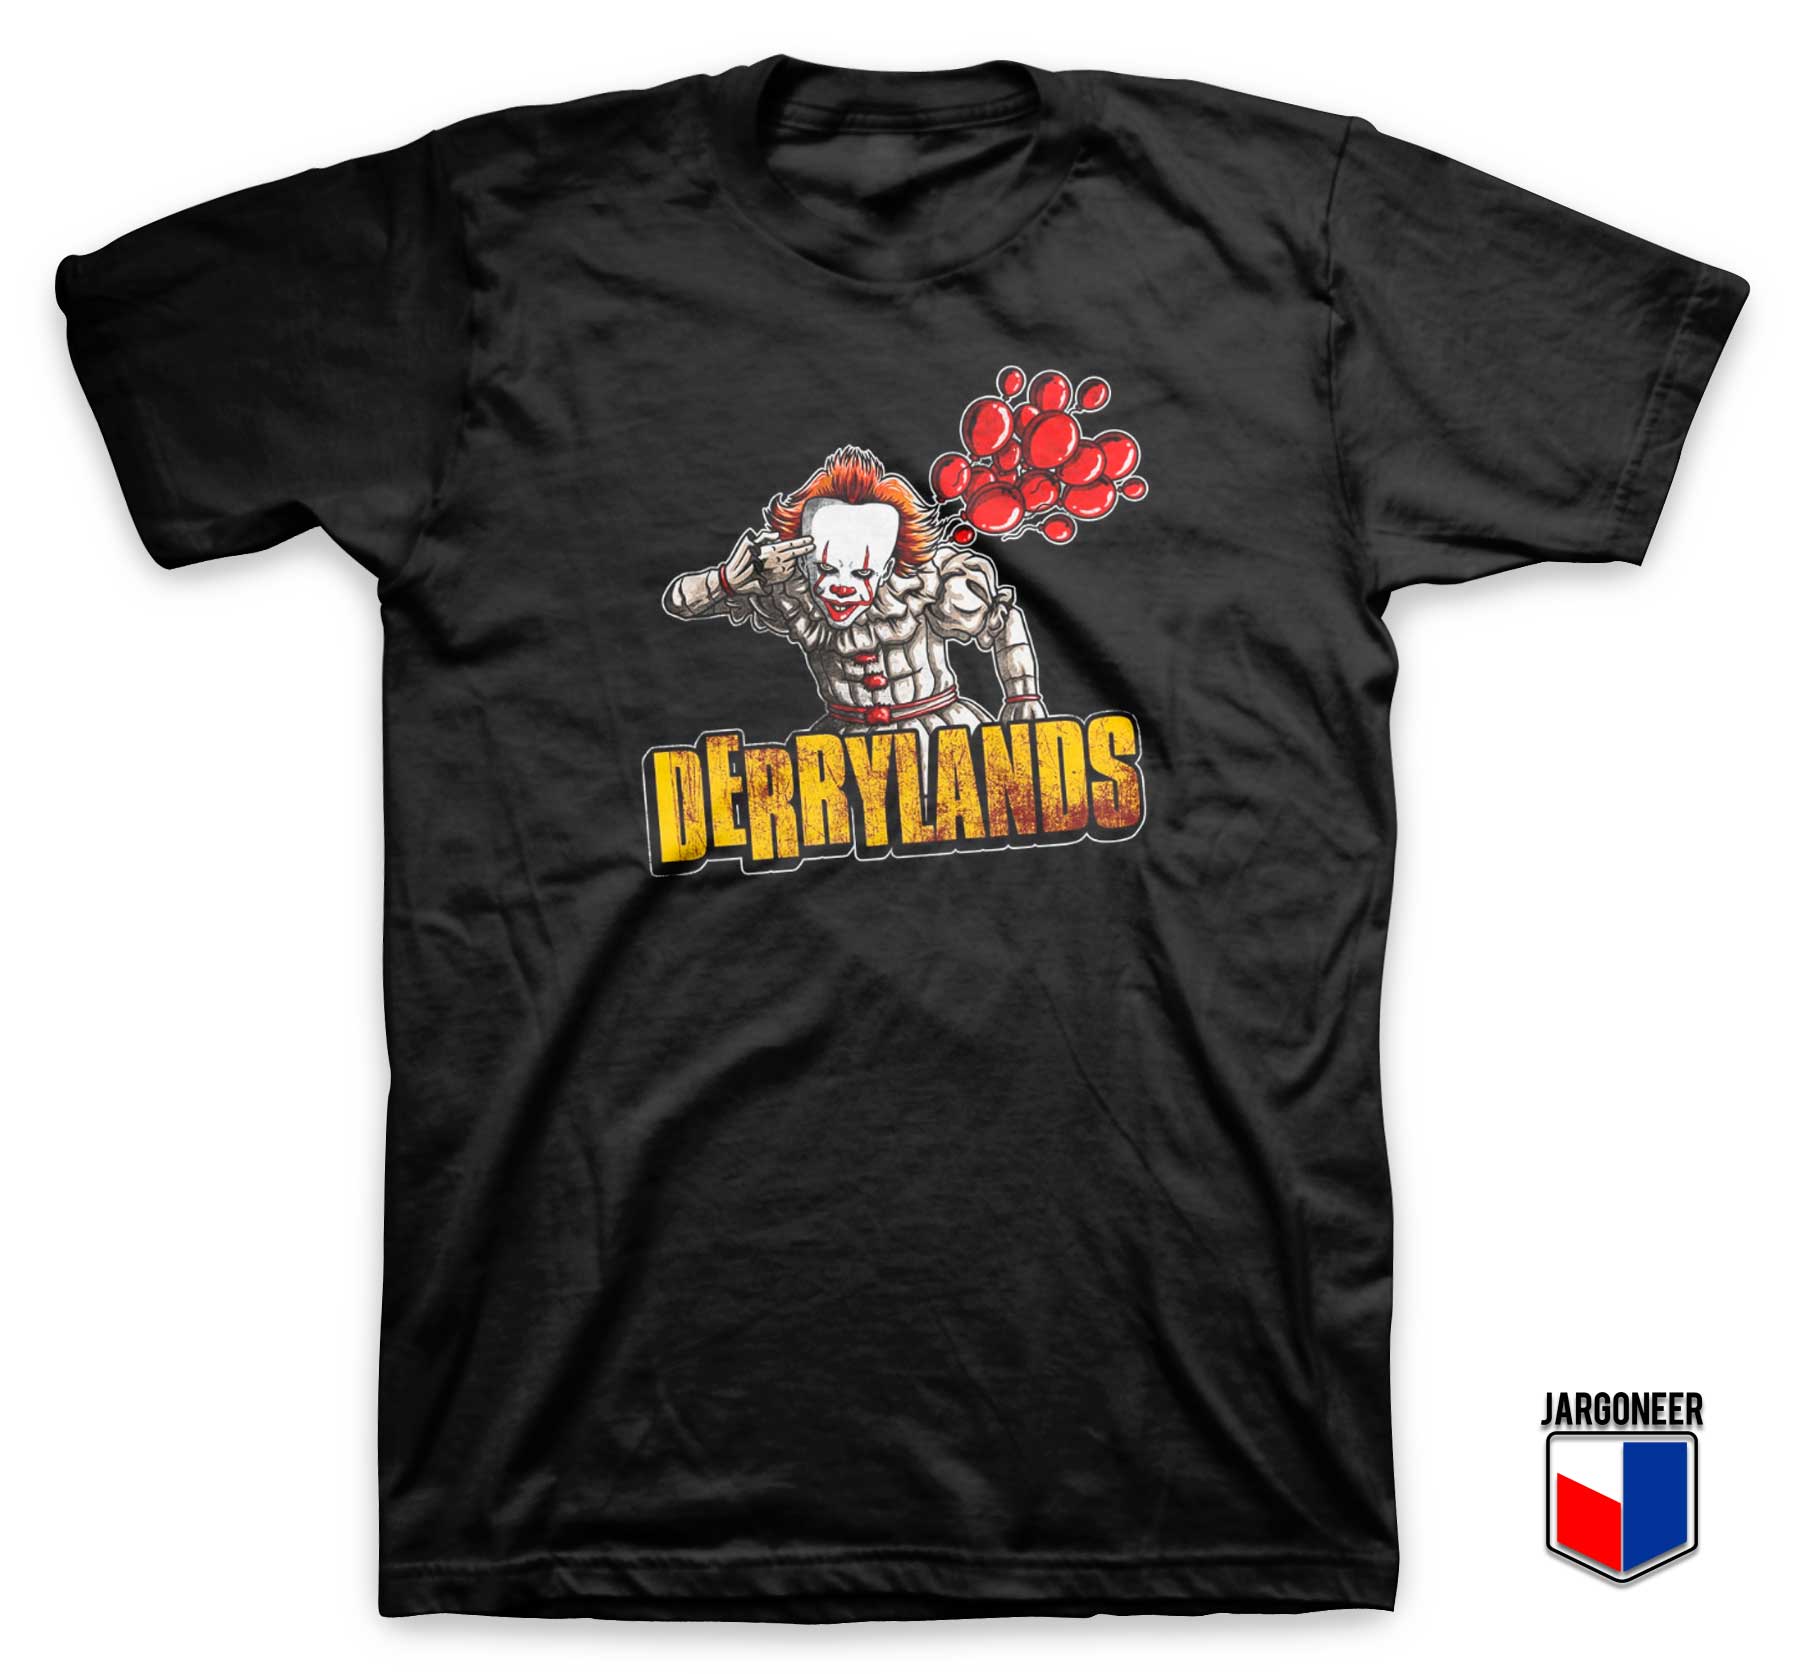 Pennywise Derrylands T Shirt - Shop Unique Graphic Cool Shirt Designs